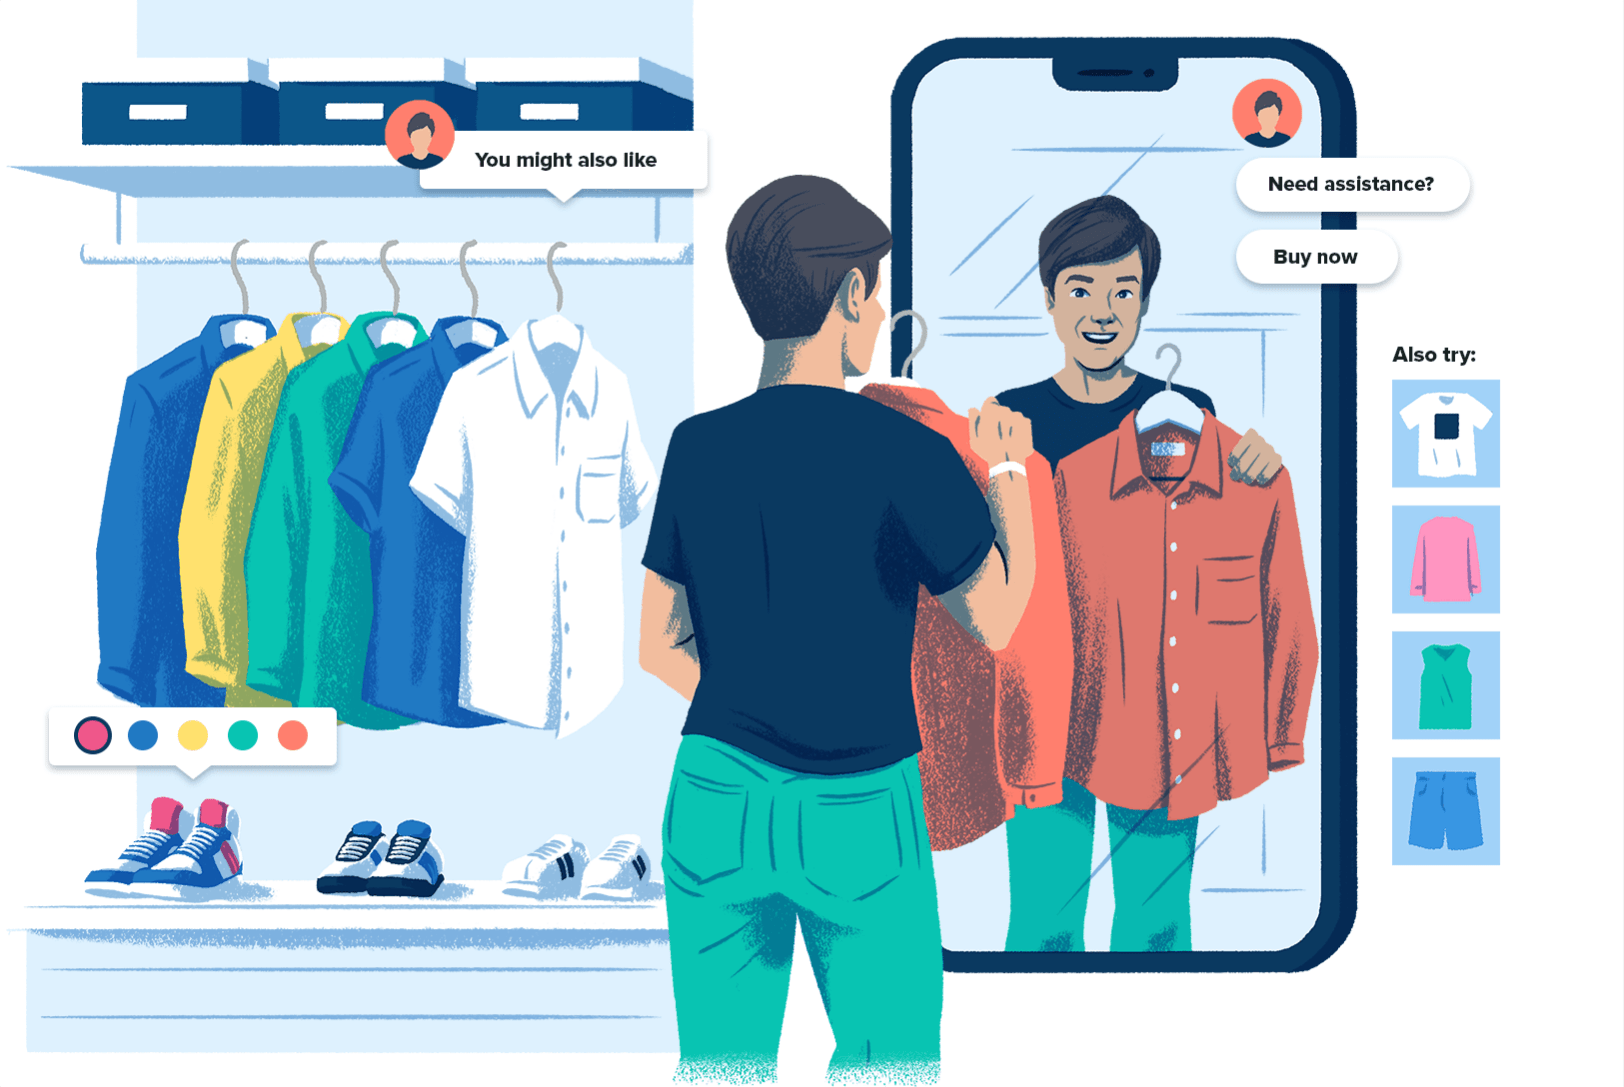 Illustration montrant un client devant une vitrine avec un miroir en forme de téléphone cellulaire et des boutons d'achat en ligne sur les articles, pour montrer que l'expérience d'achat sur les médias sociaux peut ressembler à l'expérience en magasin.